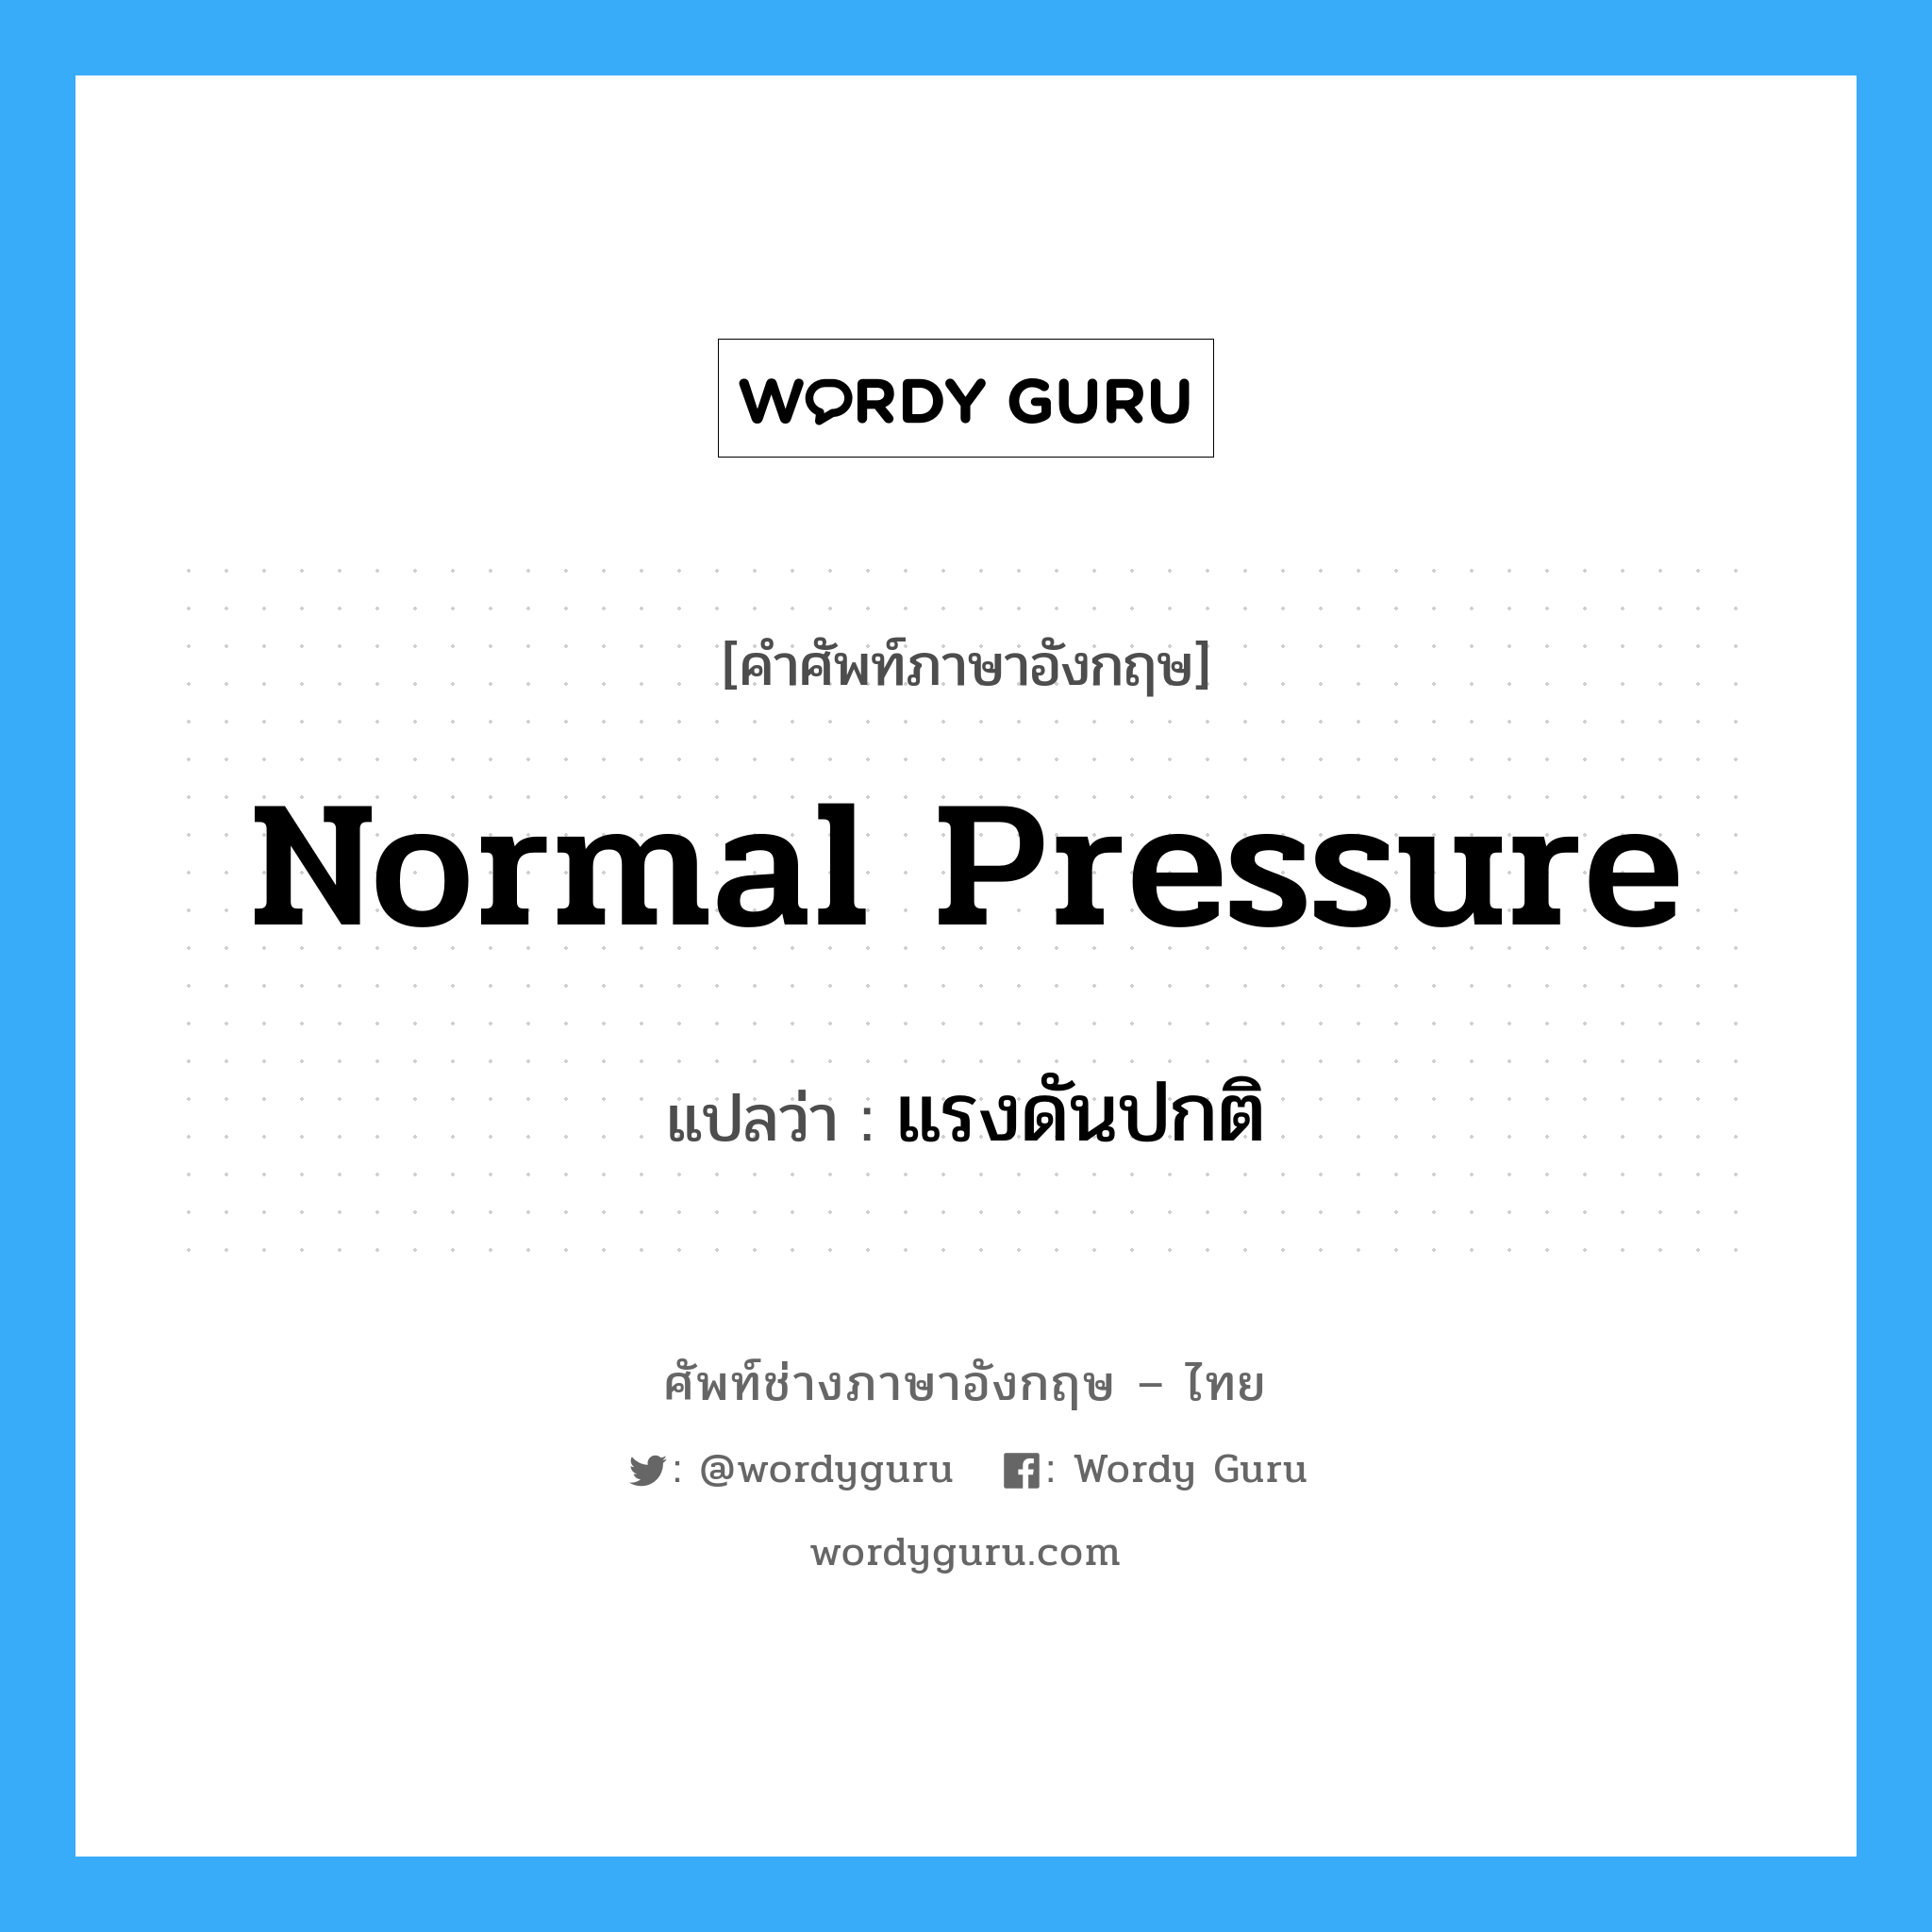 normal pressure แปลว่า?, คำศัพท์ช่างภาษาอังกฤษ - ไทย normal pressure คำศัพท์ภาษาอังกฤษ normal pressure แปลว่า แรงดันปกติ